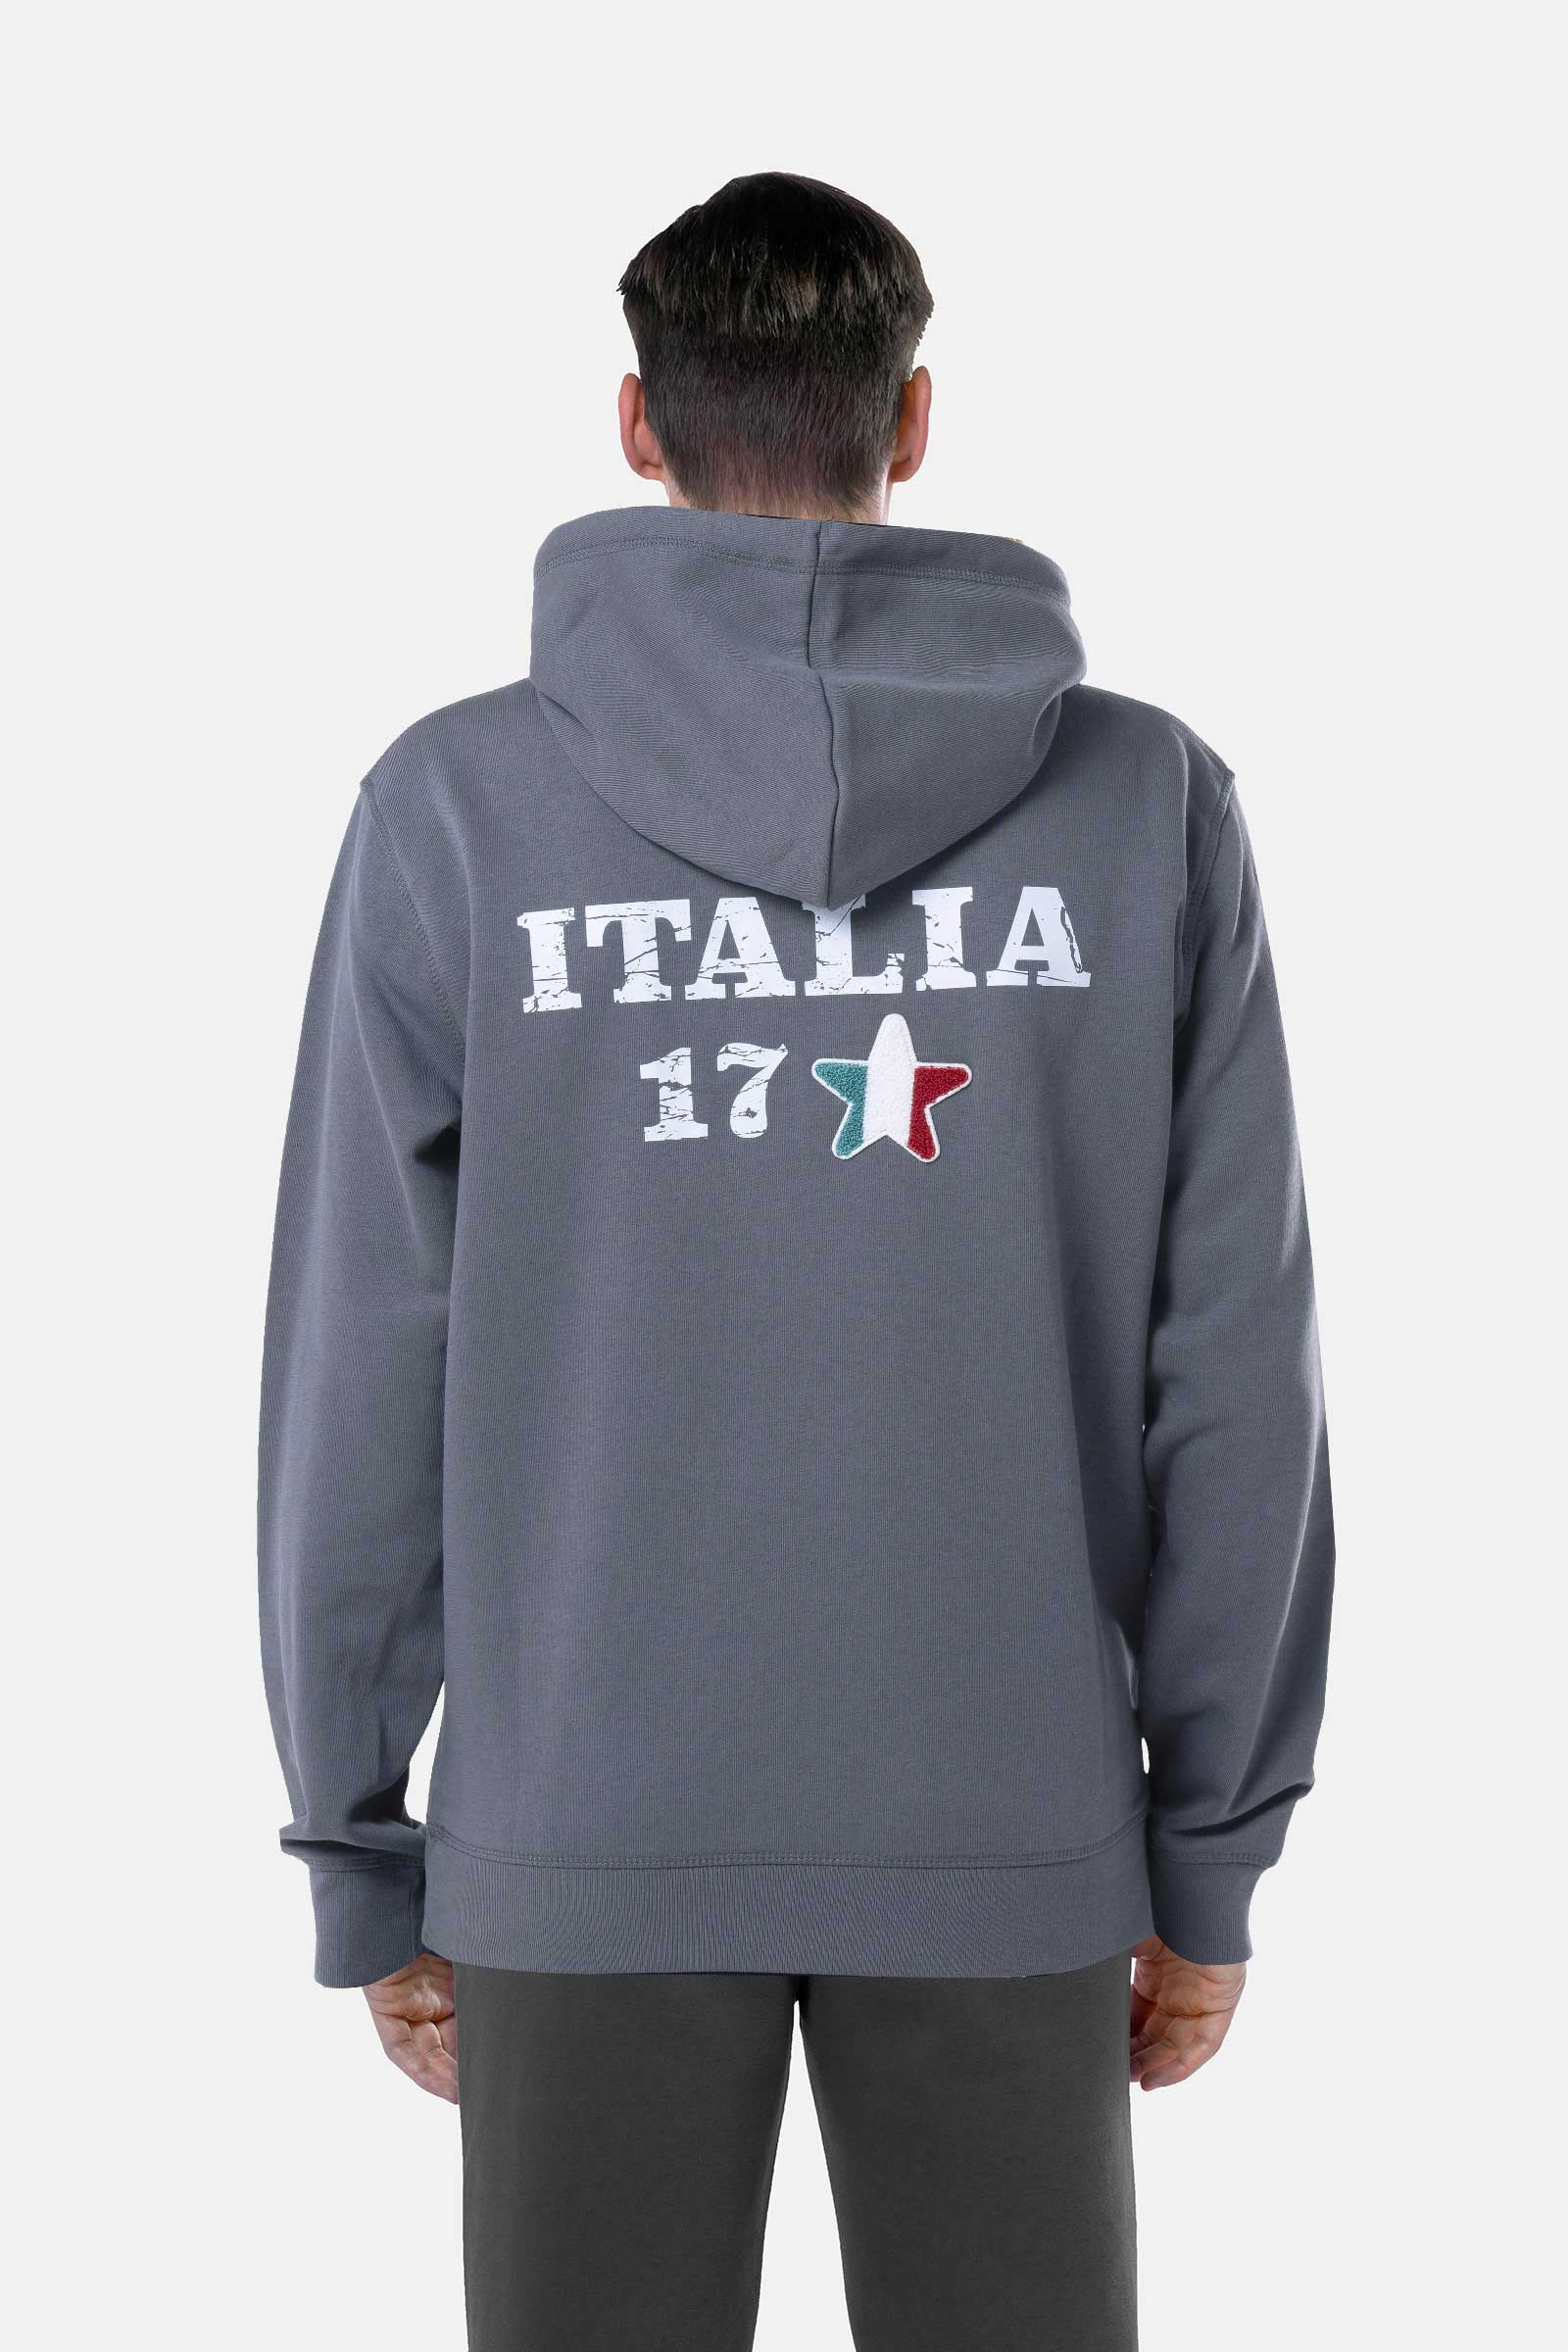 FELPA ITALIA CON CAPPUCCIO - GREY - Abbigliamento sportivo | Hydrogen